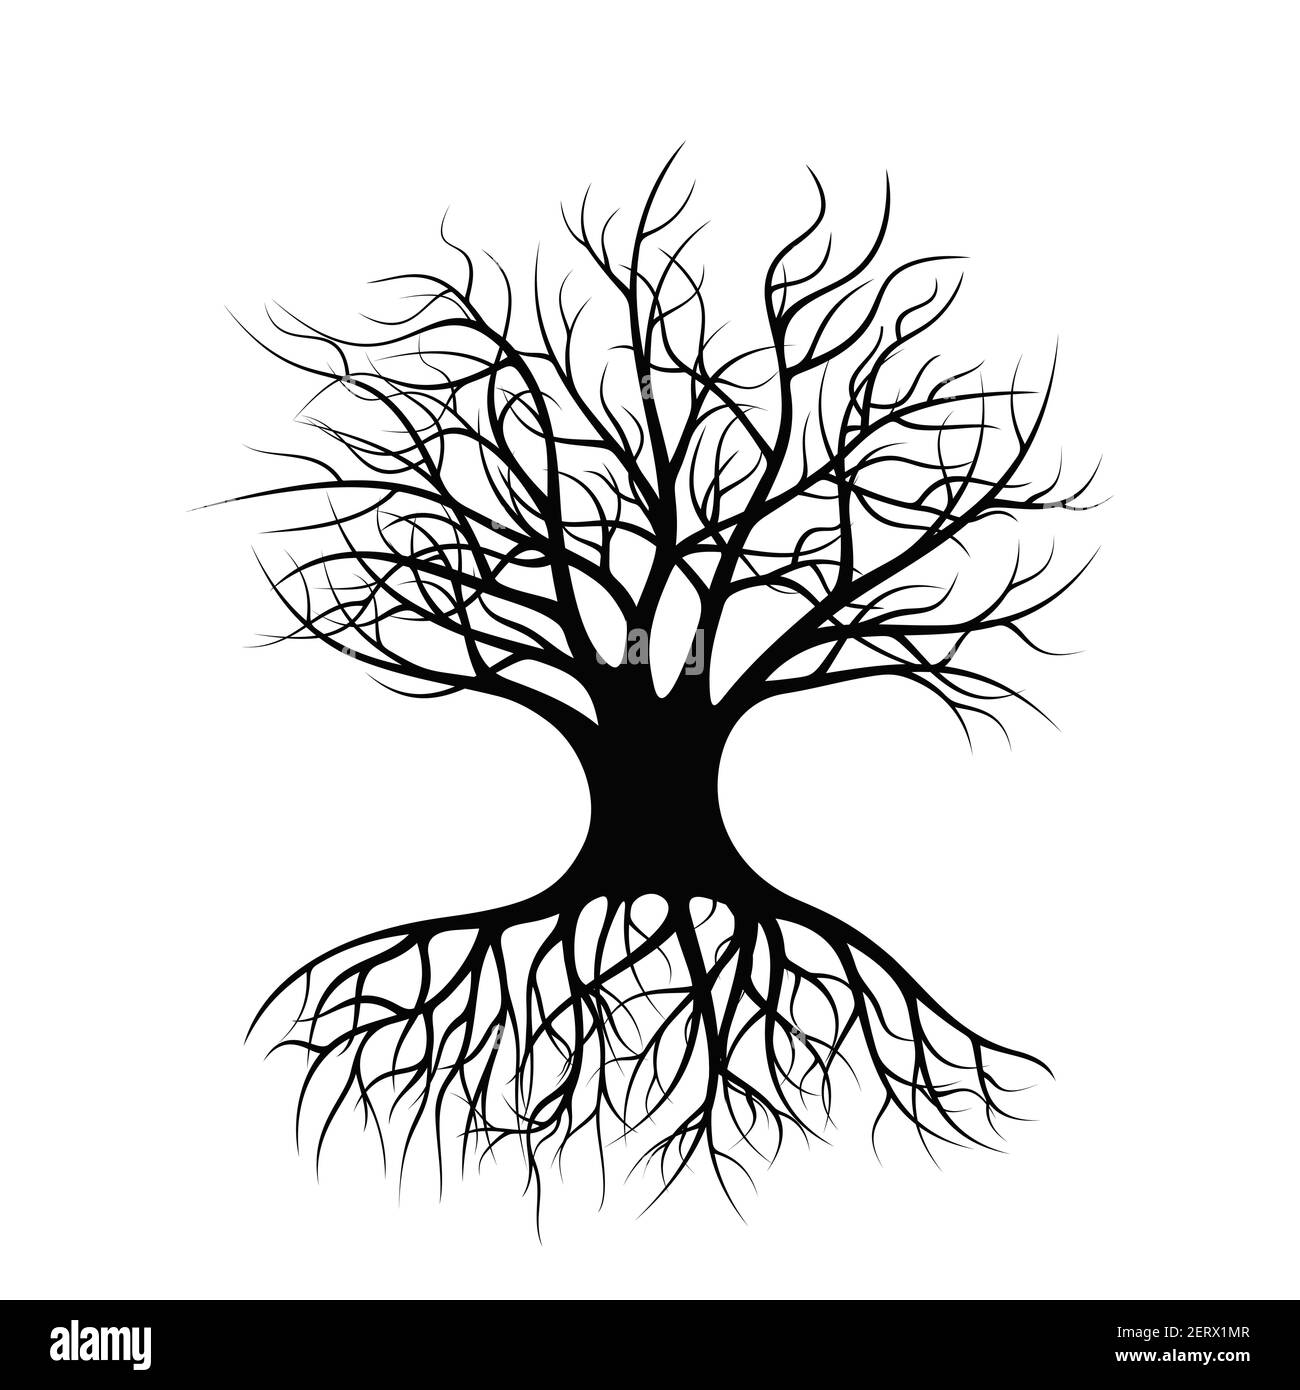 Ein einsam stehender Baum mit Wurzeln und ohne Laub. Schwarze Silhouette eines Baumes. Stock Vektor